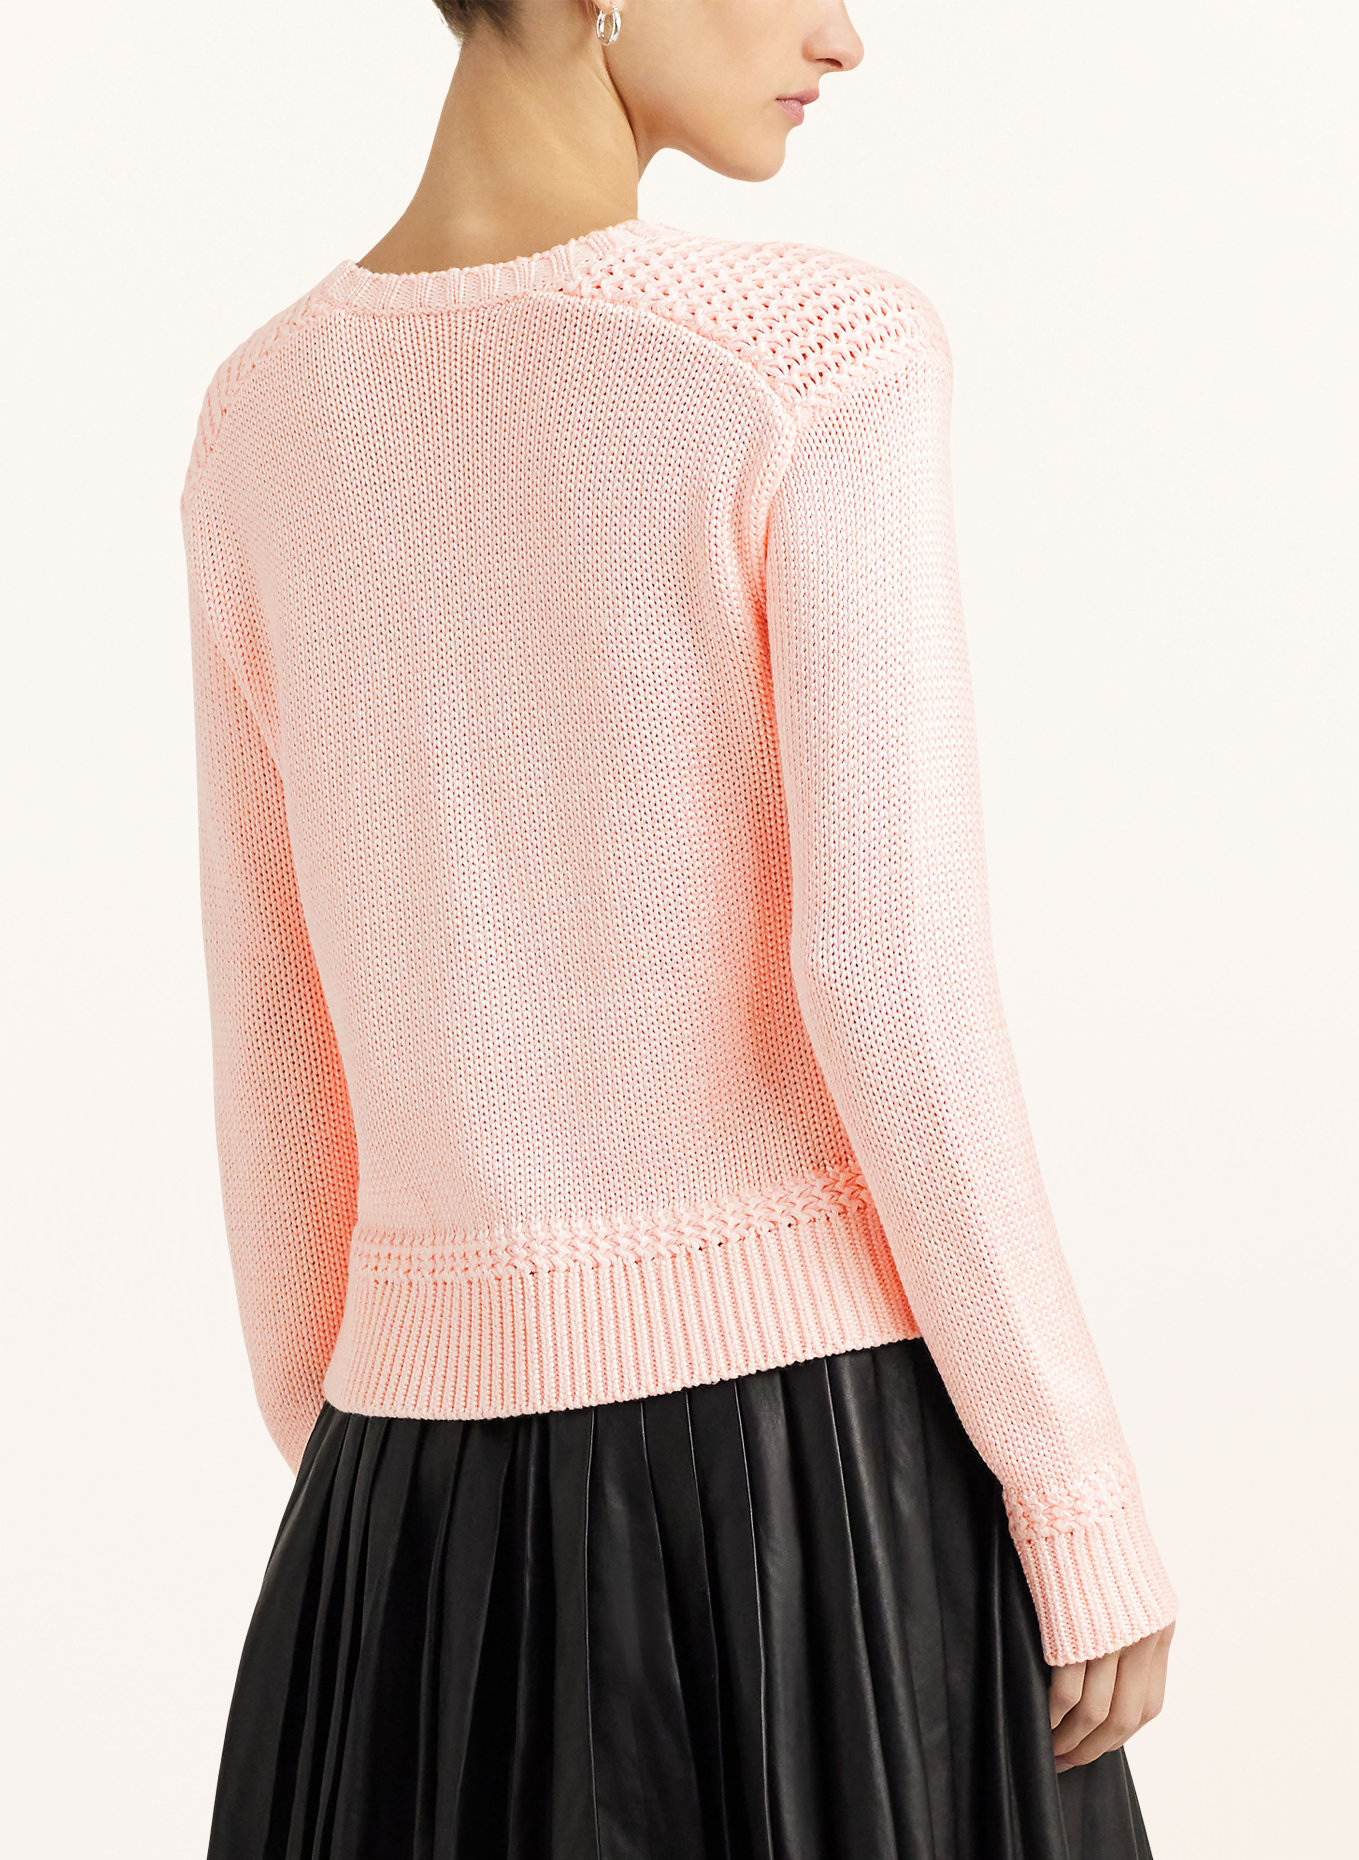 LAUREN RALPH LAUREN Sweater, Color: LIGHT PINK (Image 3)